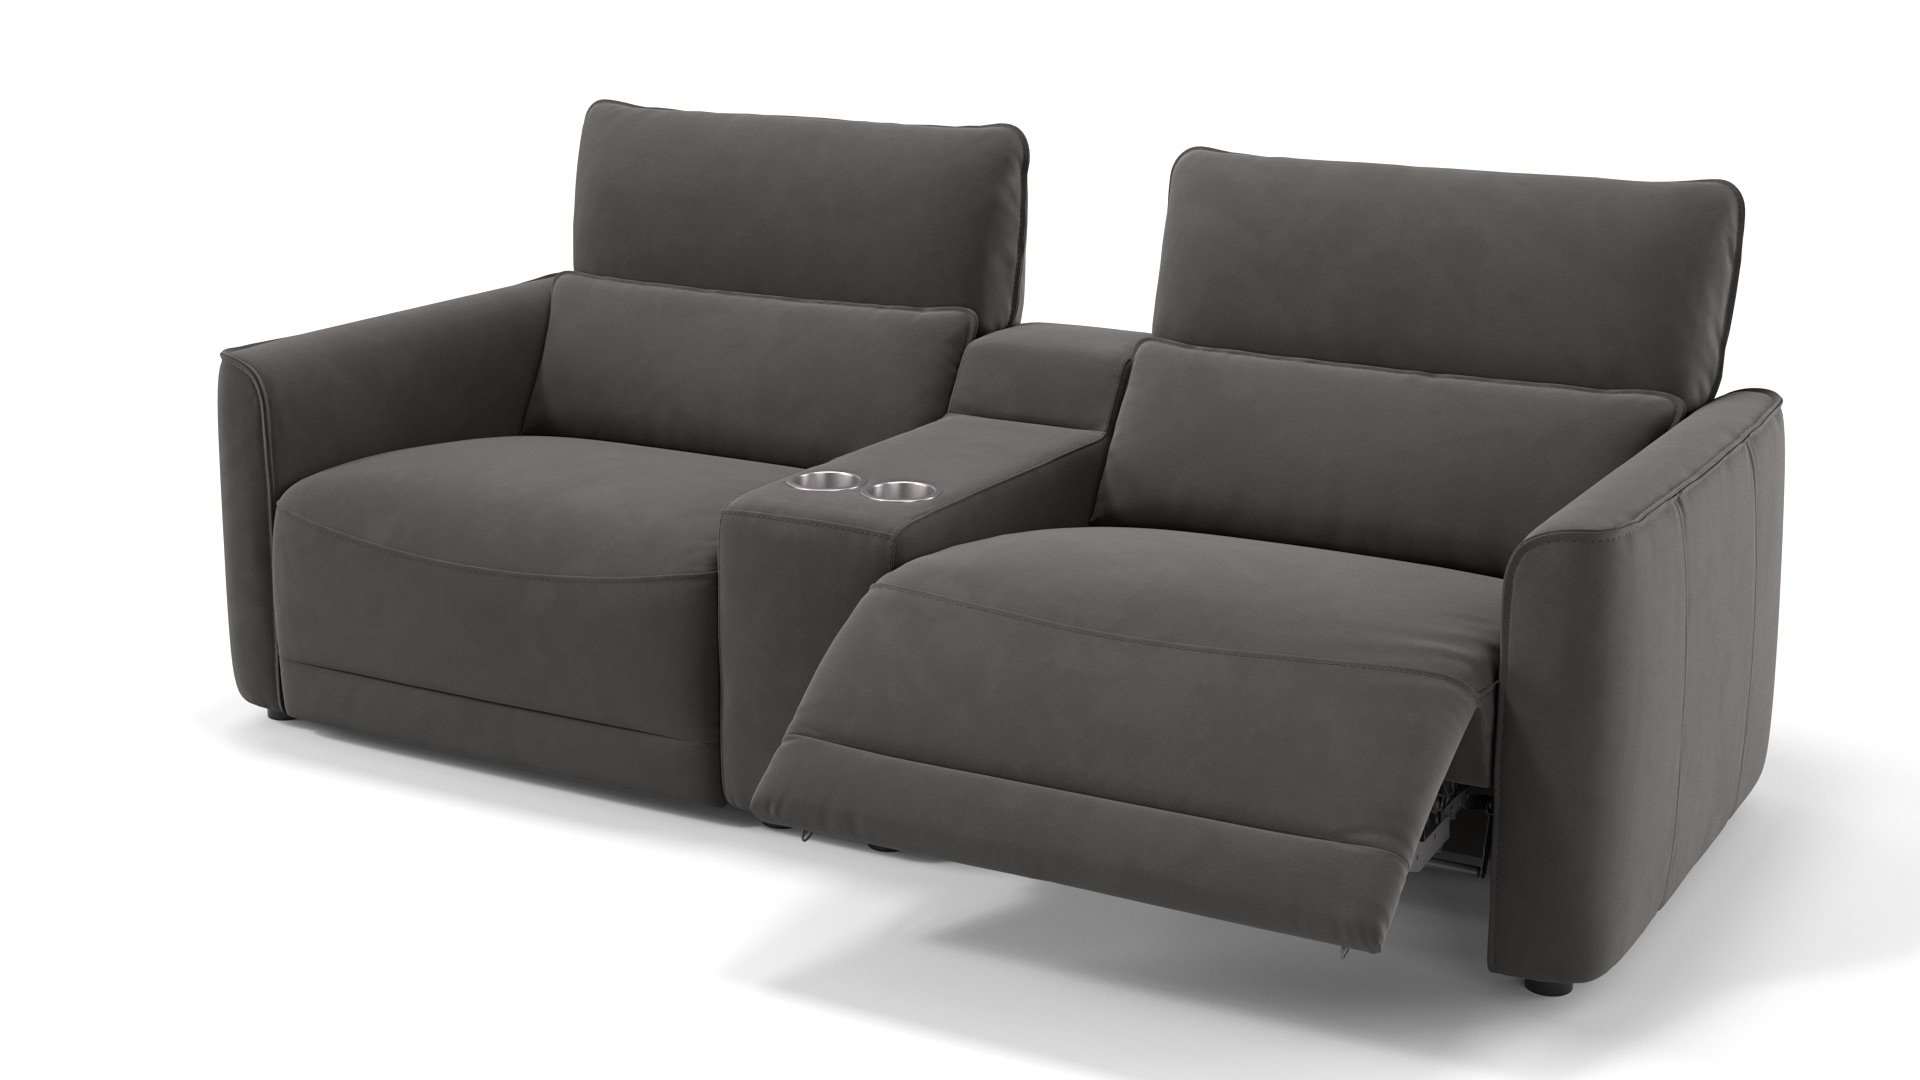 Kino sofa - Die Produkte unter der Vielzahl an analysierten Kino sofa